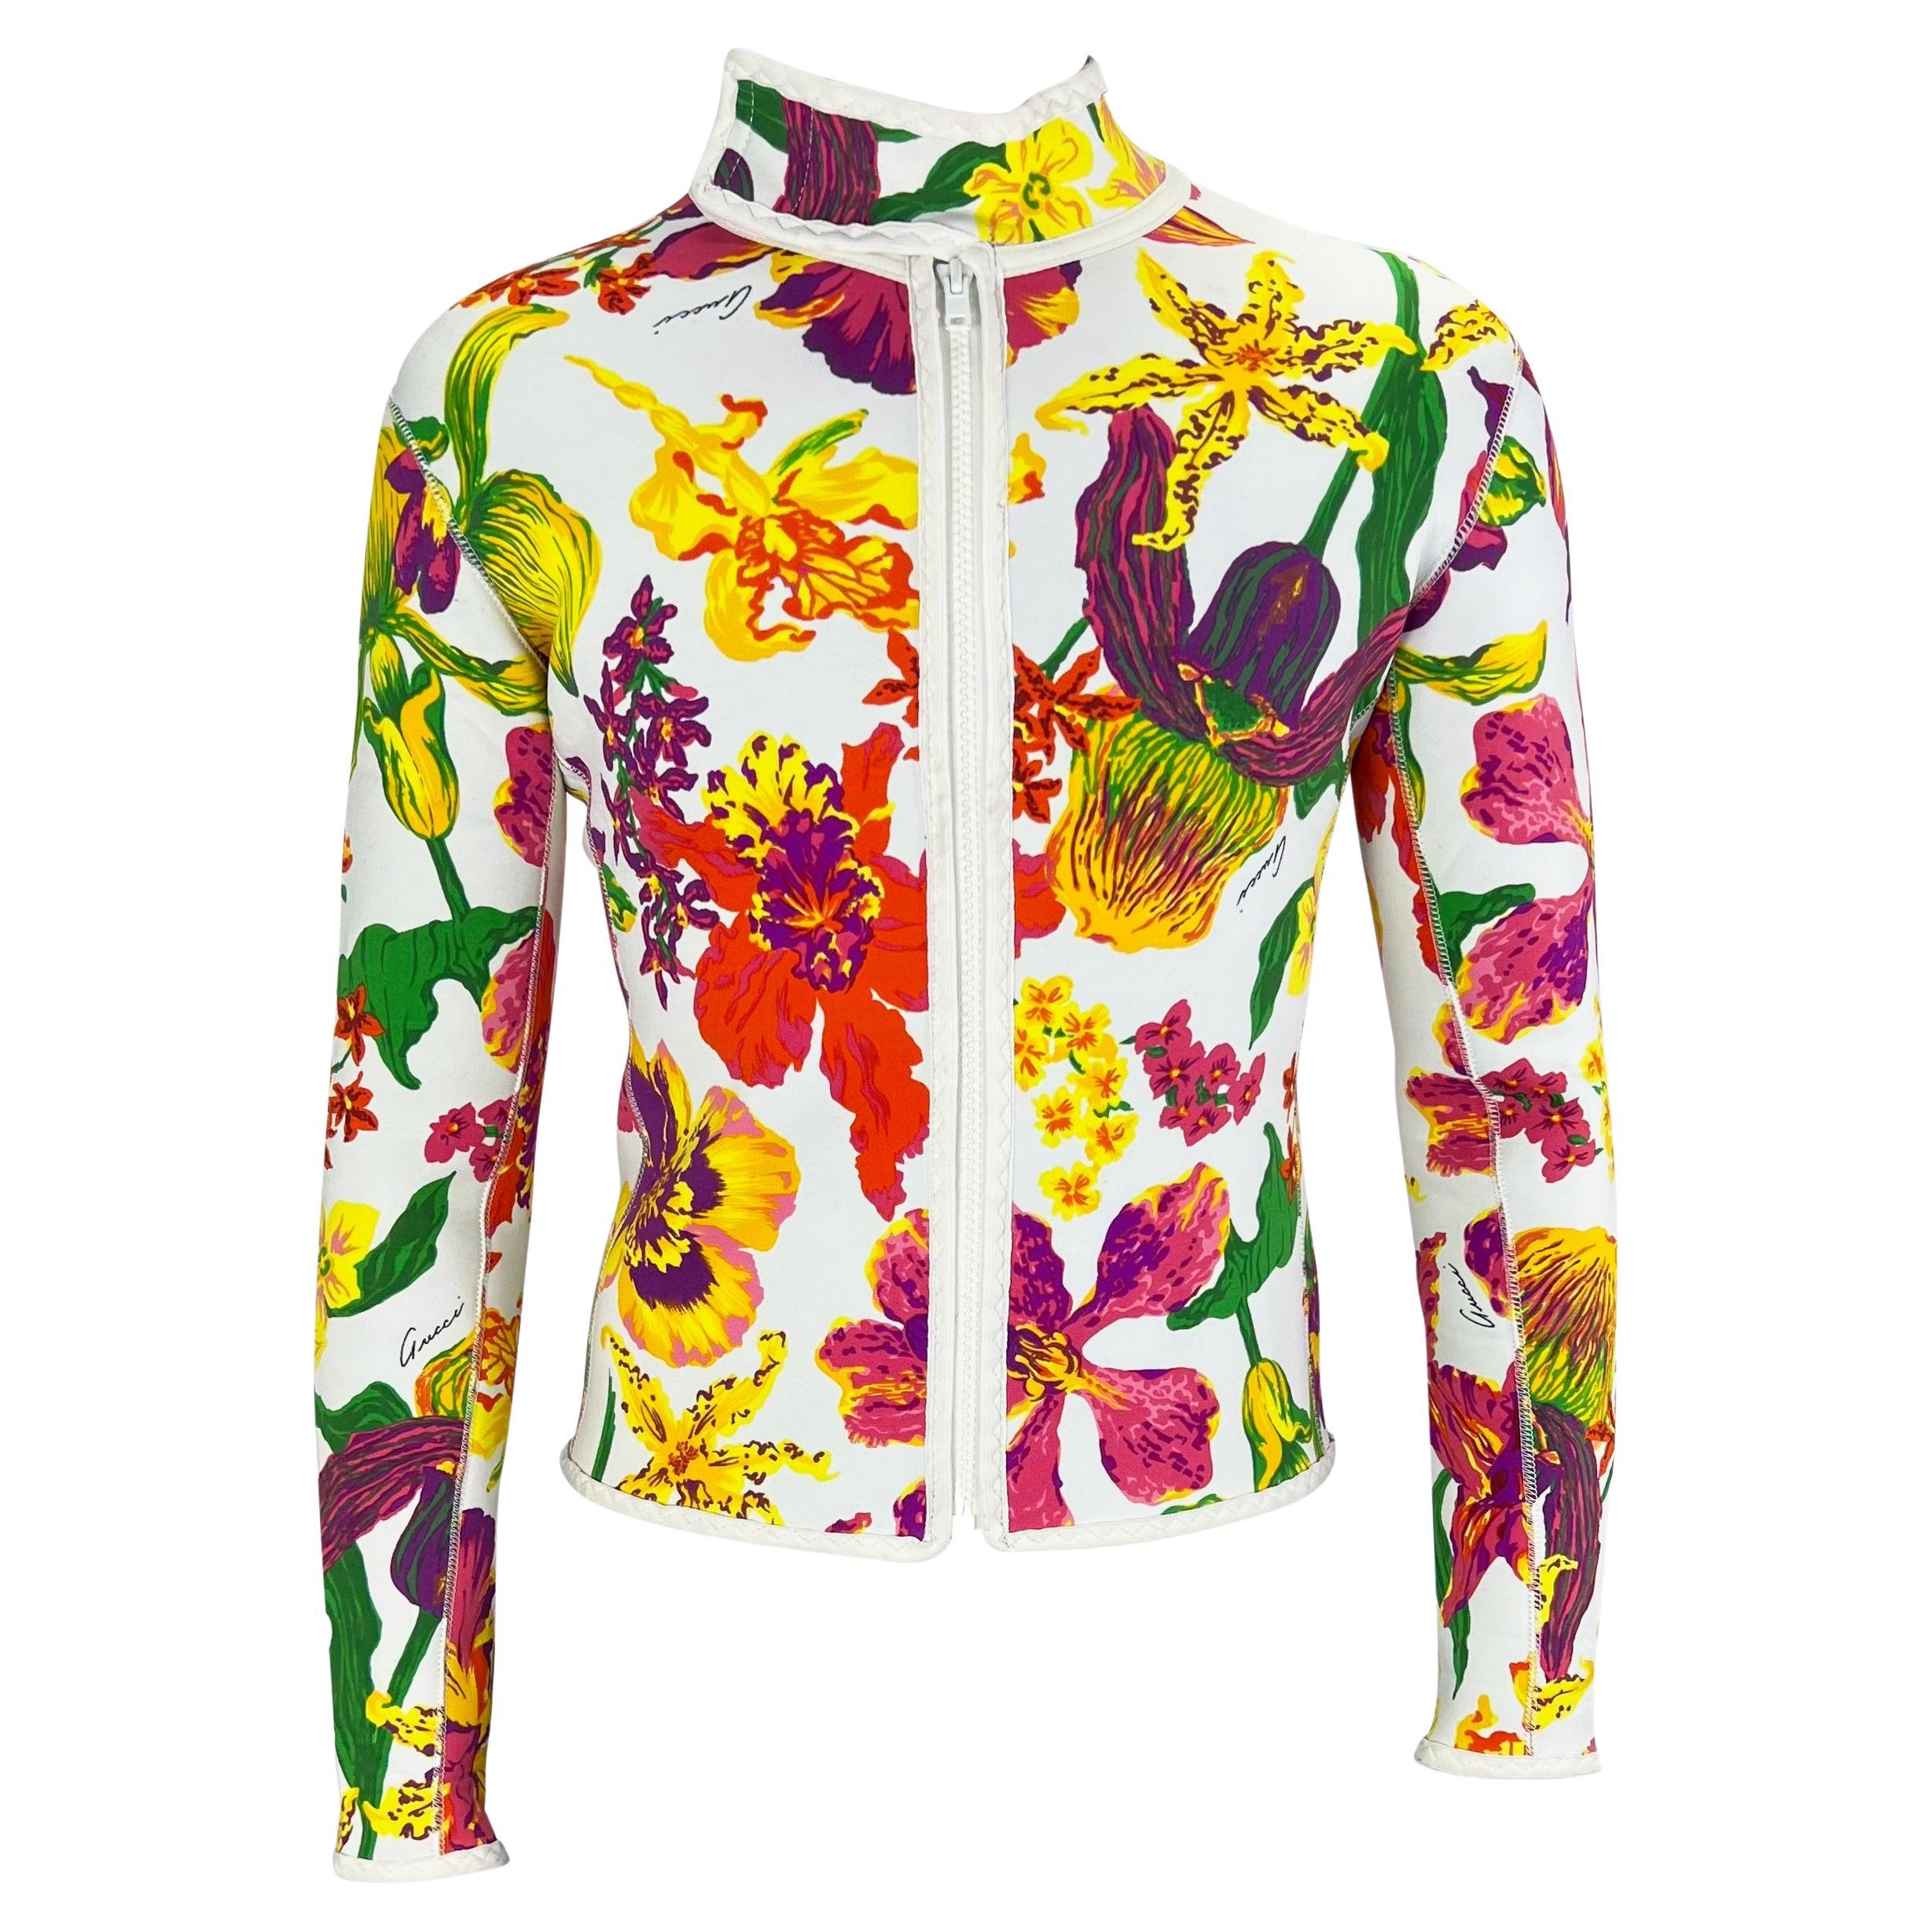 F/S 1999 Gucci by Tom Ford Herren Laufsteg Ad Weiße Scuba-Jacke aus geblümtem Neopren mit Blumenmuster